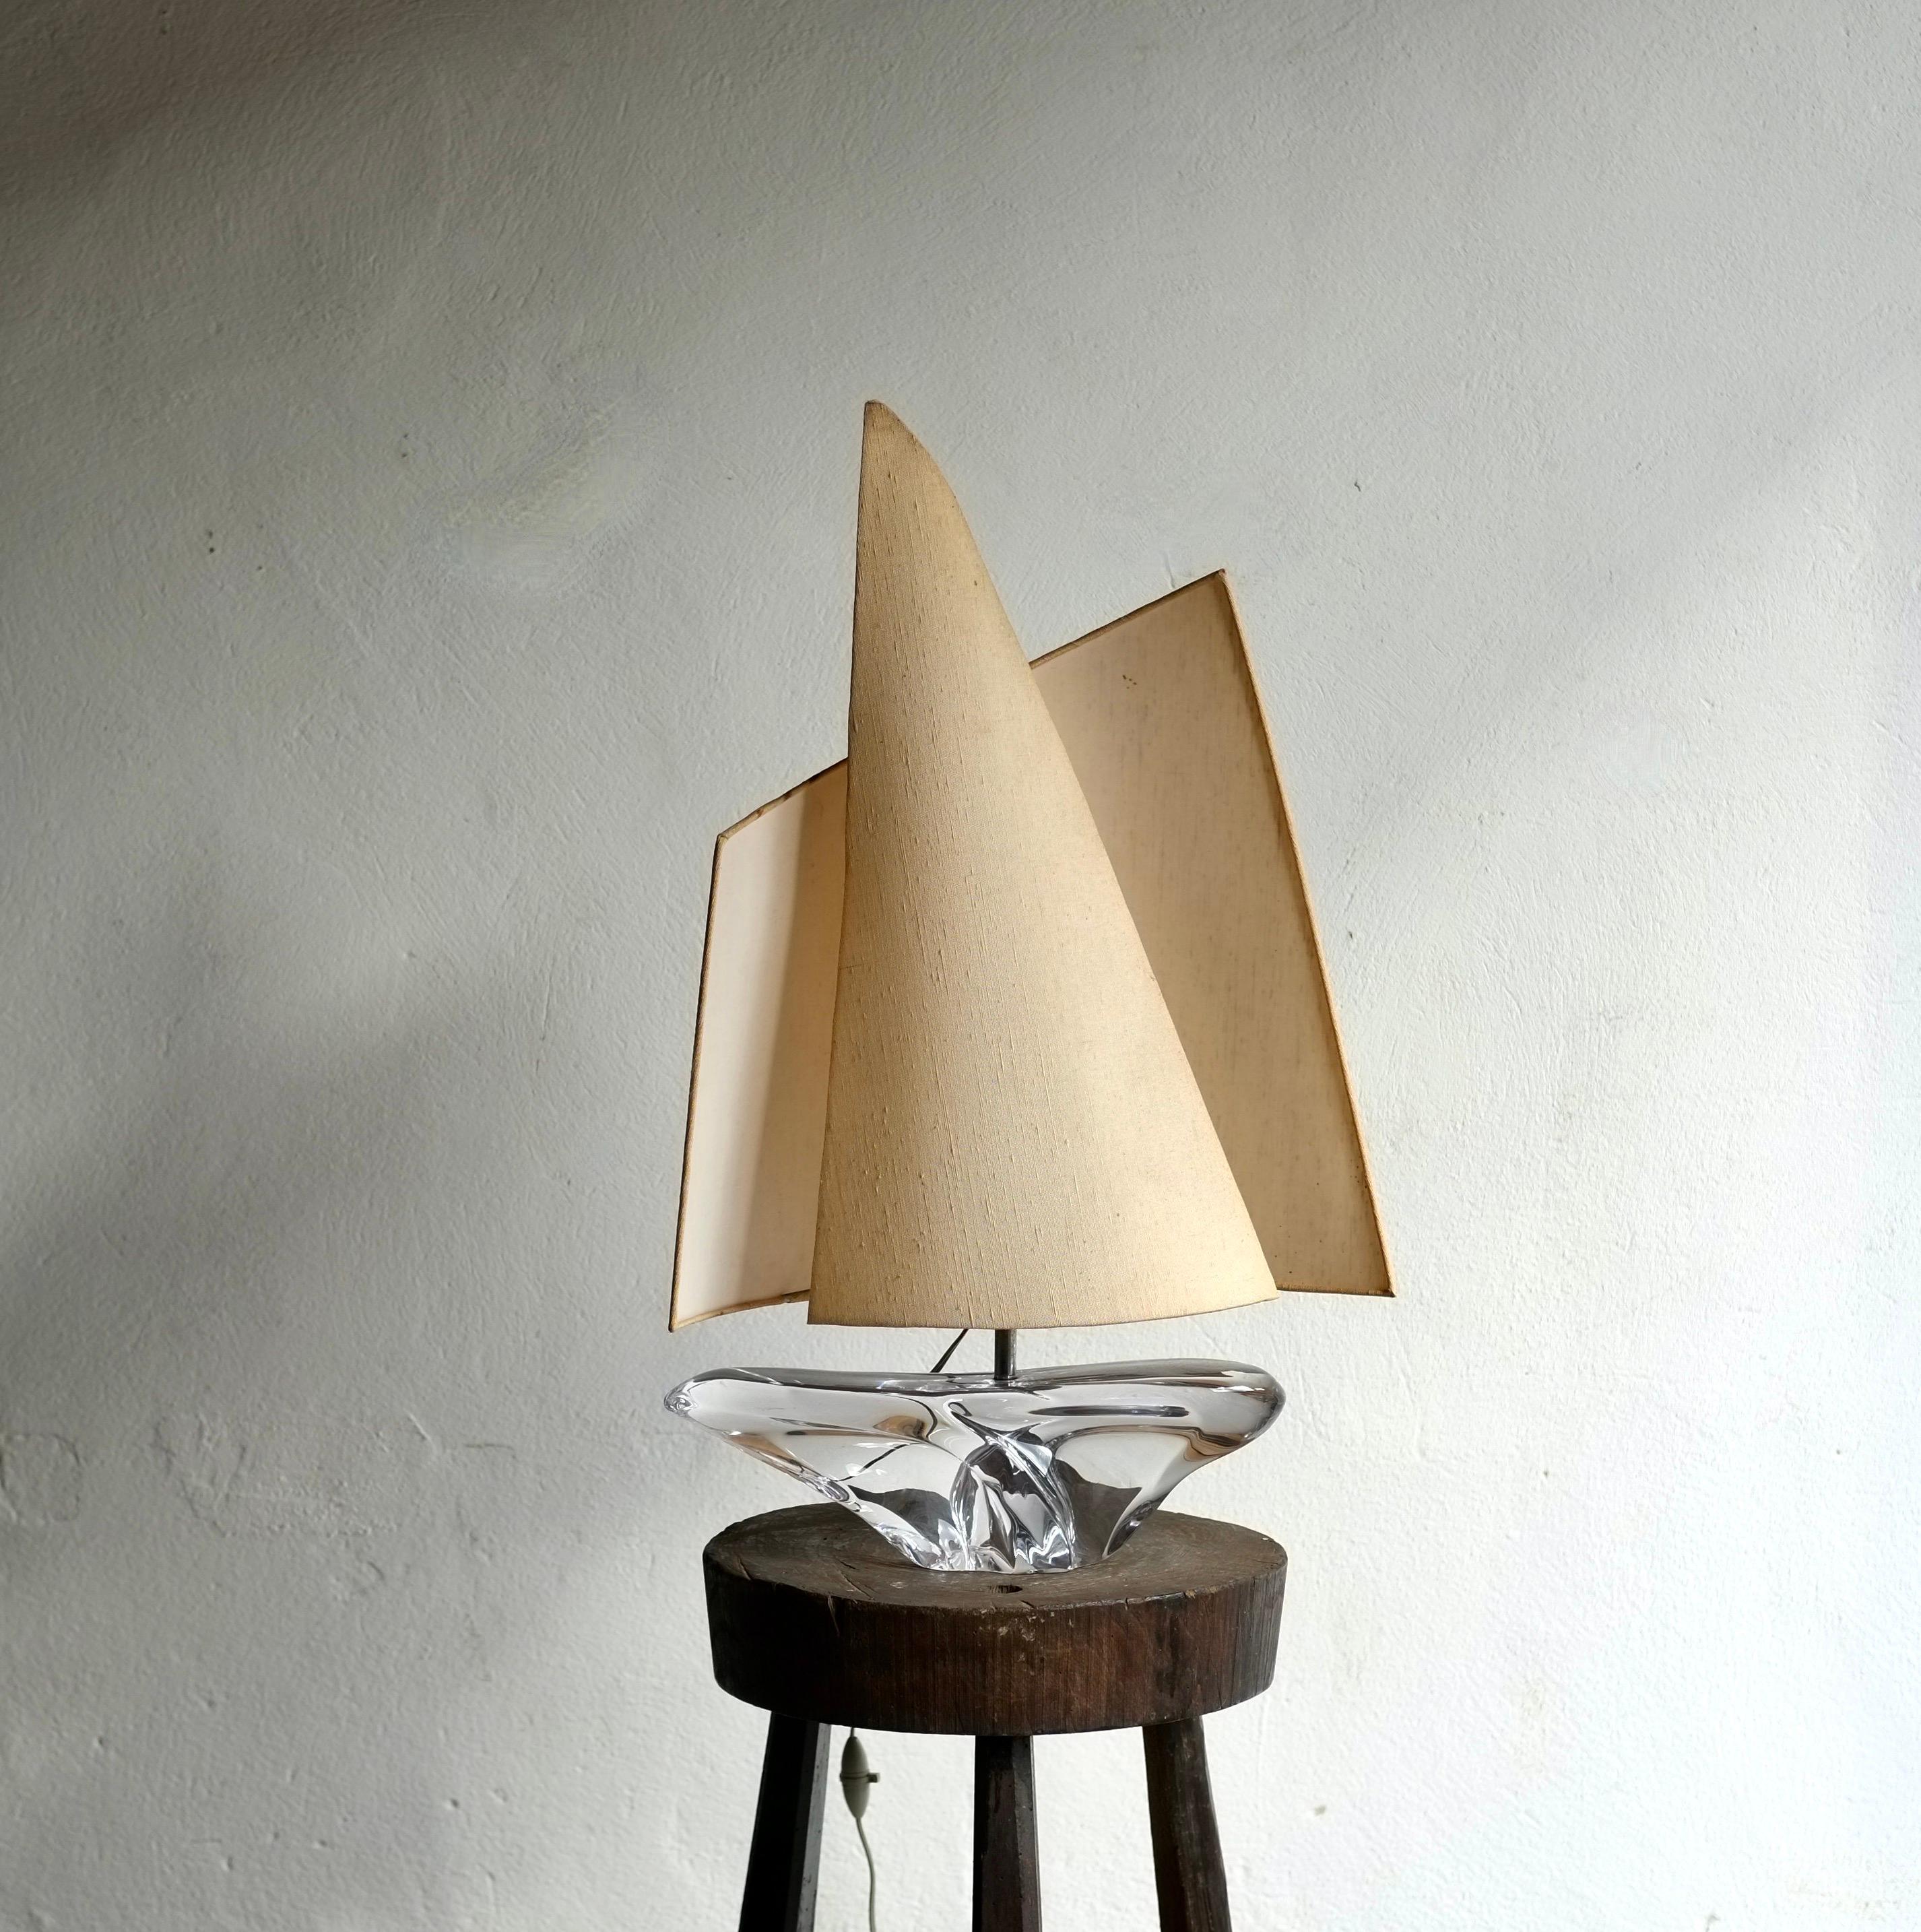 Eine große Segelbootlampe, hergestellt von Daum, Frankreich, in den 1960er Jahren.

Sockel aus Kristallglas mit einem auffälligen skulpturalen Schirm im Windsegel-Stil. In sehr gutem Vintage-Zustand, ohne Beschädigungen.